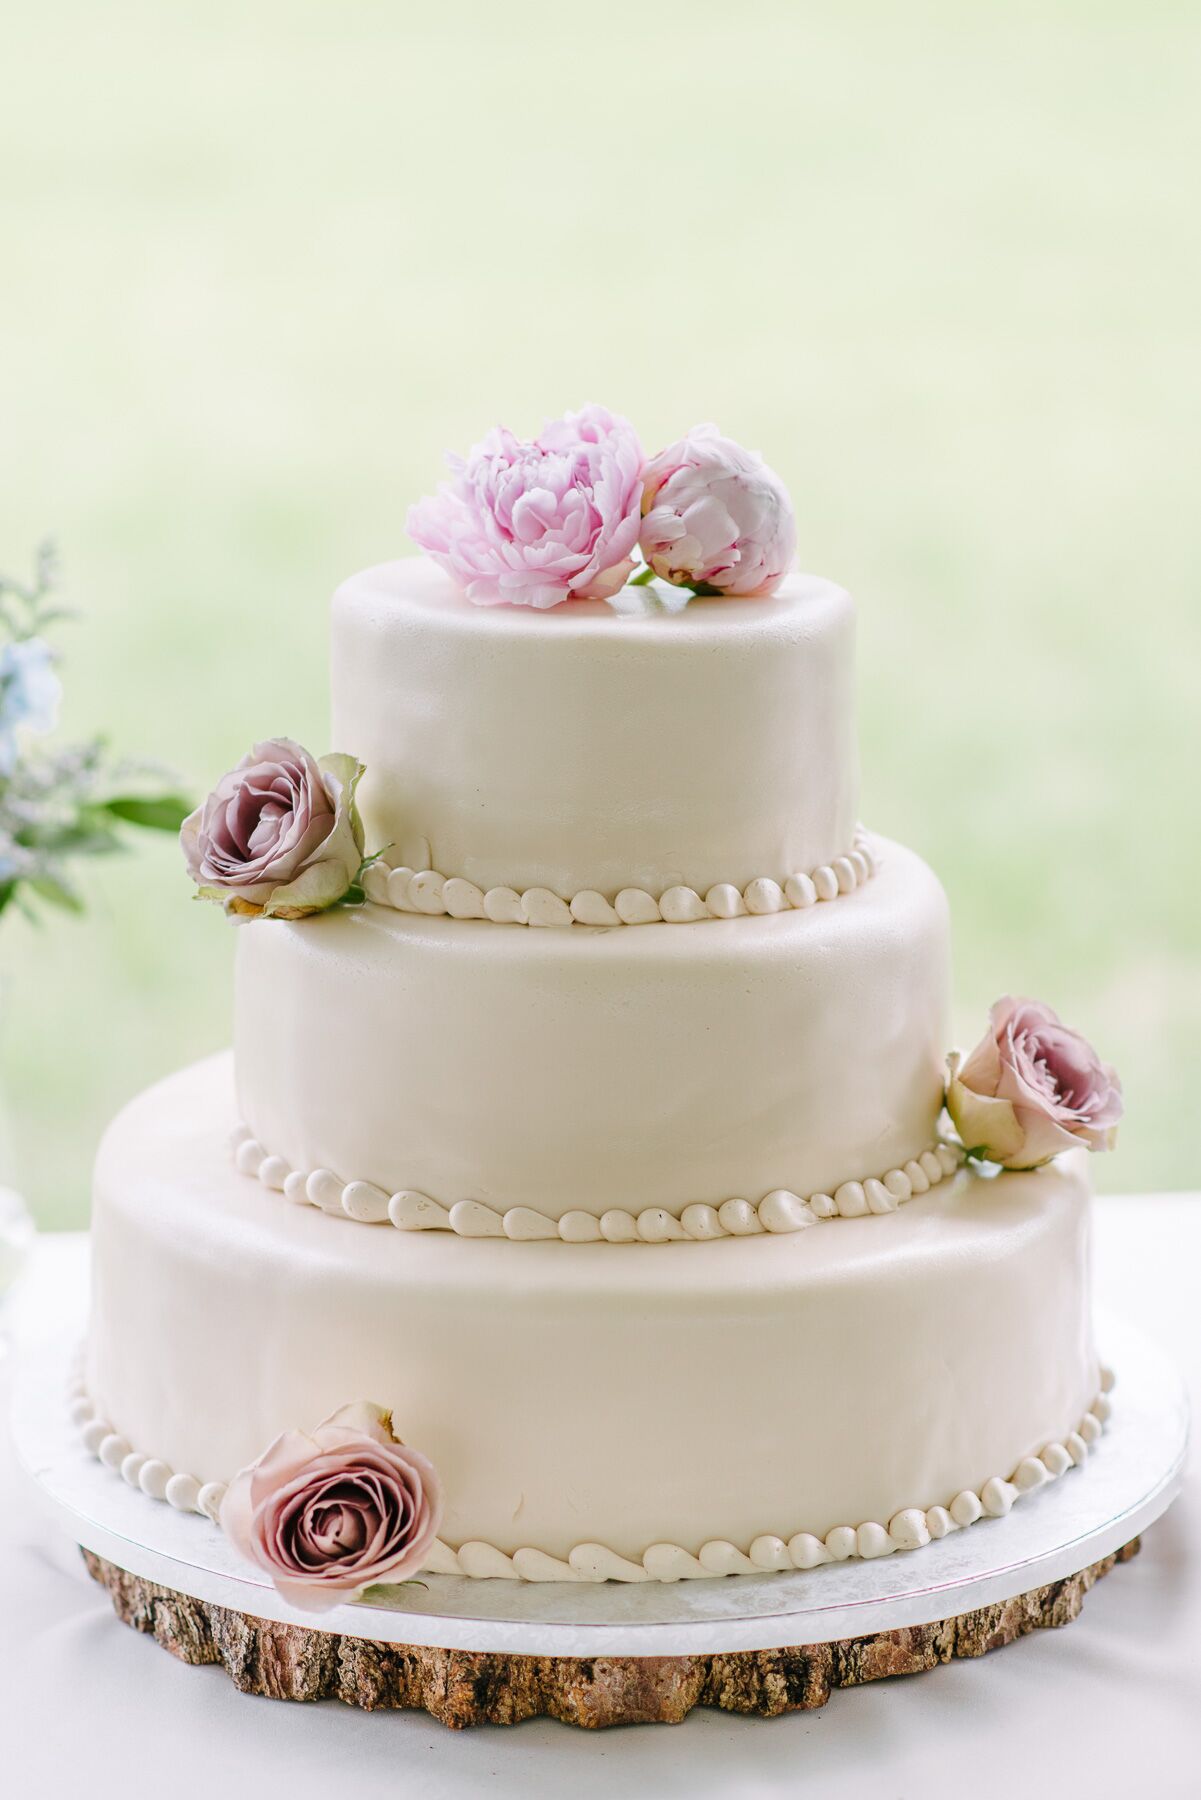 Traditional English Wedding Cake With Royal Icing 